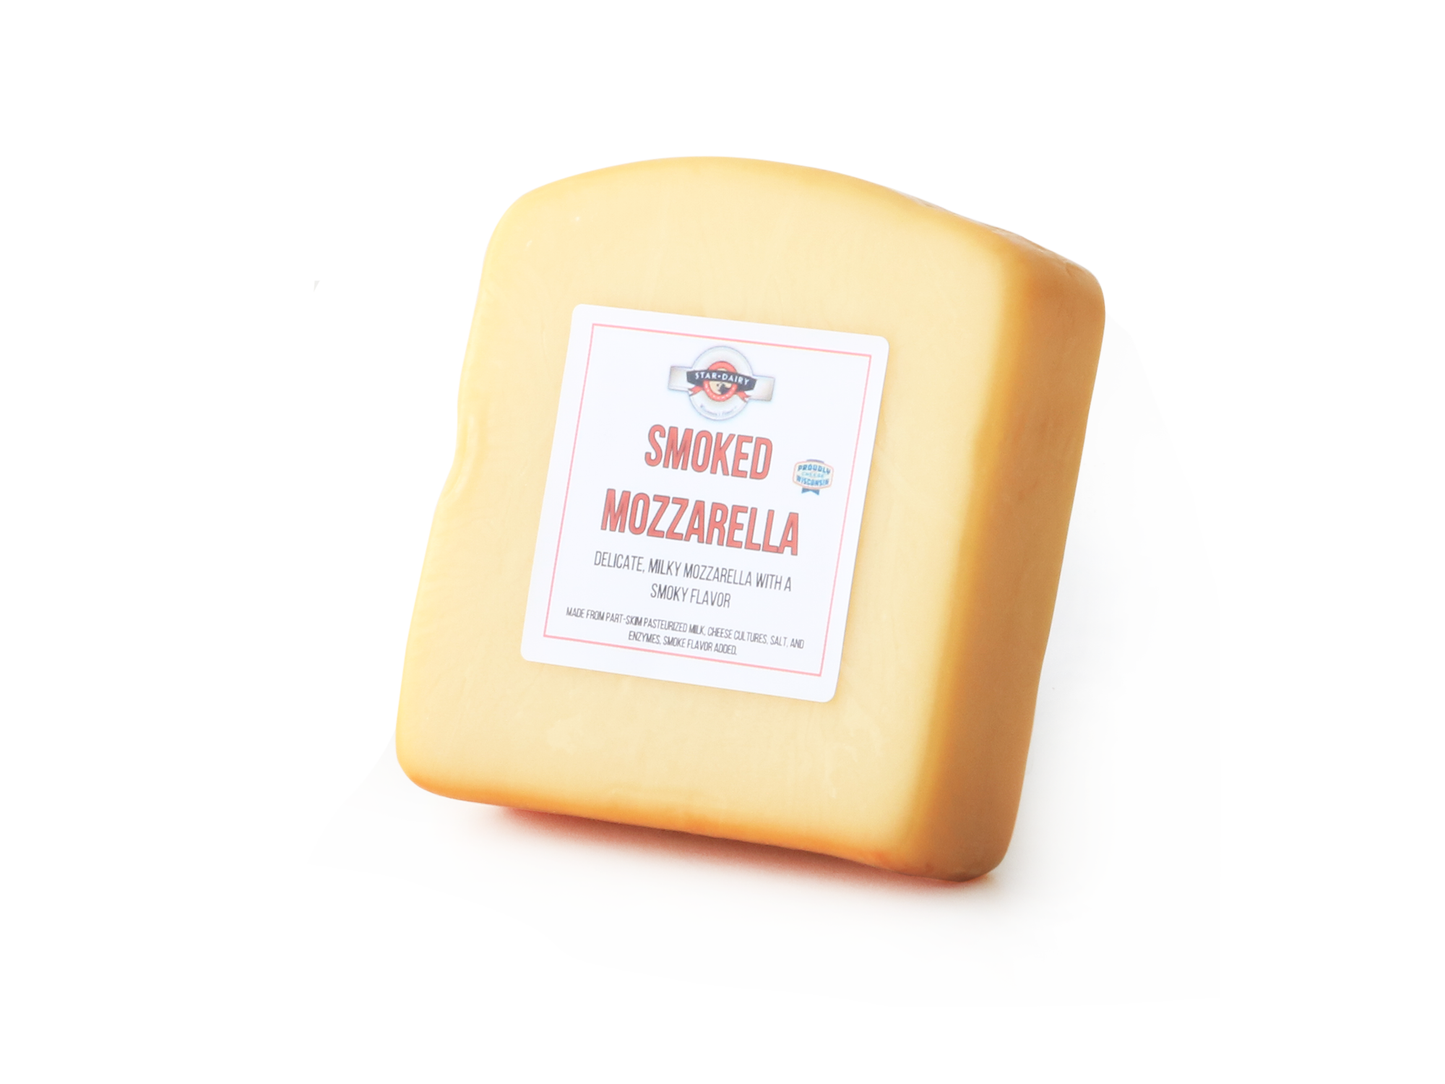 8 ounce piece of Smoked Mozzarella Cheese 